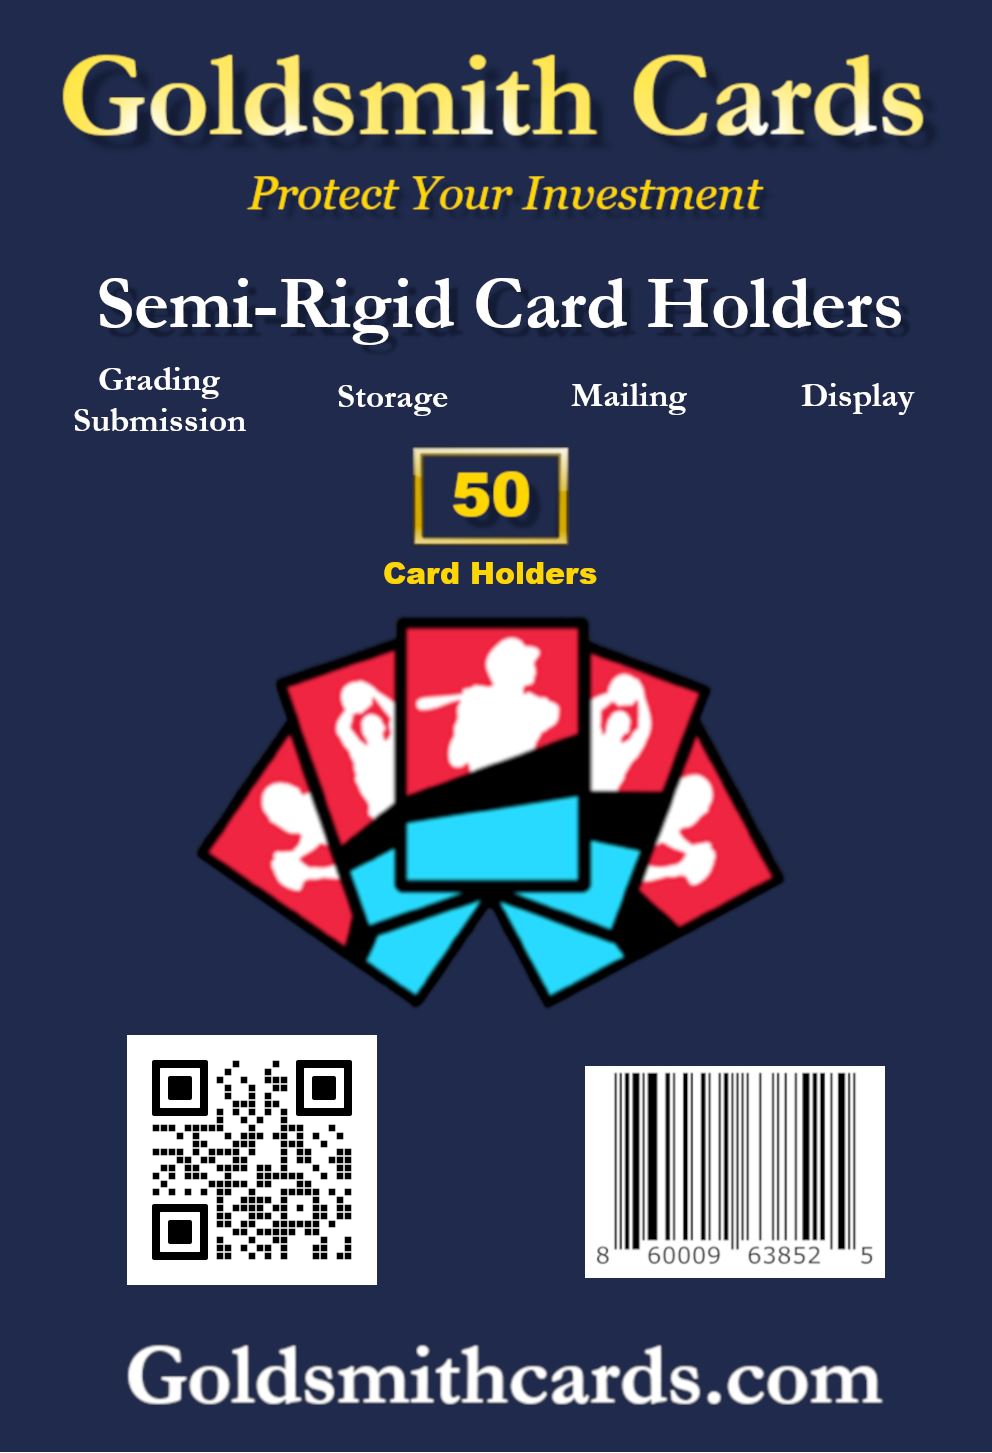 Legends Card Grading Kit - 100 Semi-Rigid Card India